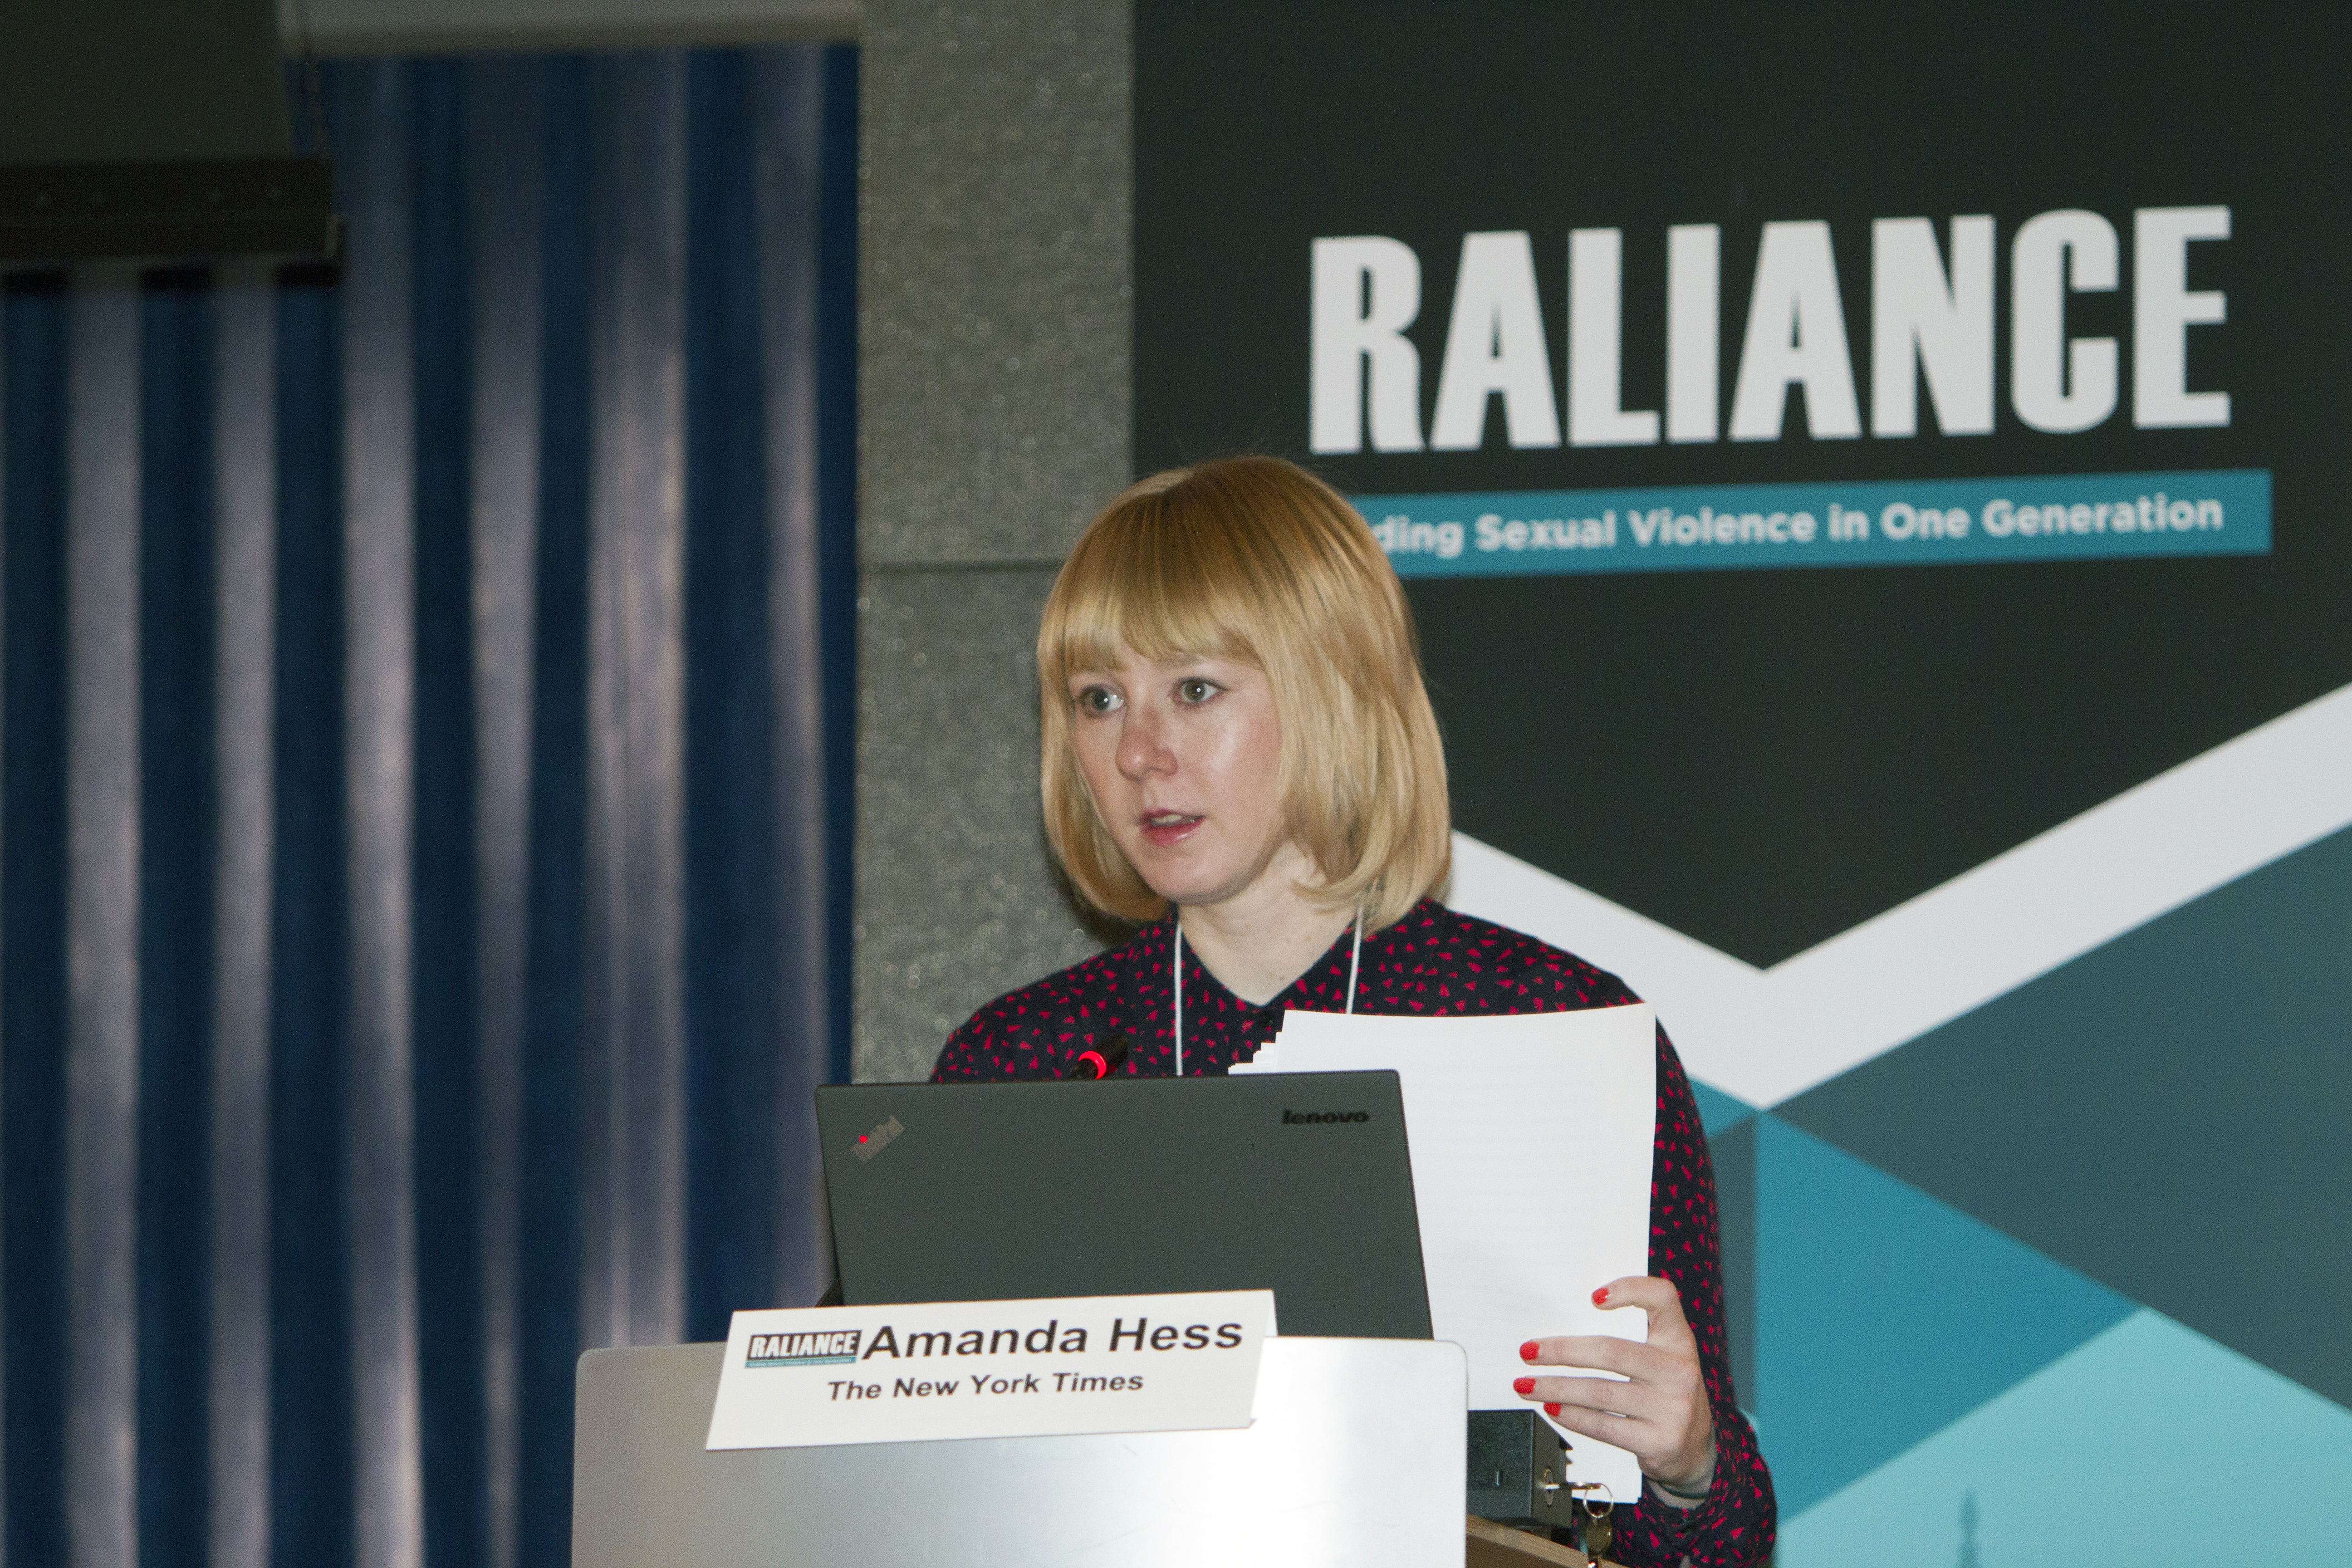 Amanda Hess speaks at the Raliance Media Summit